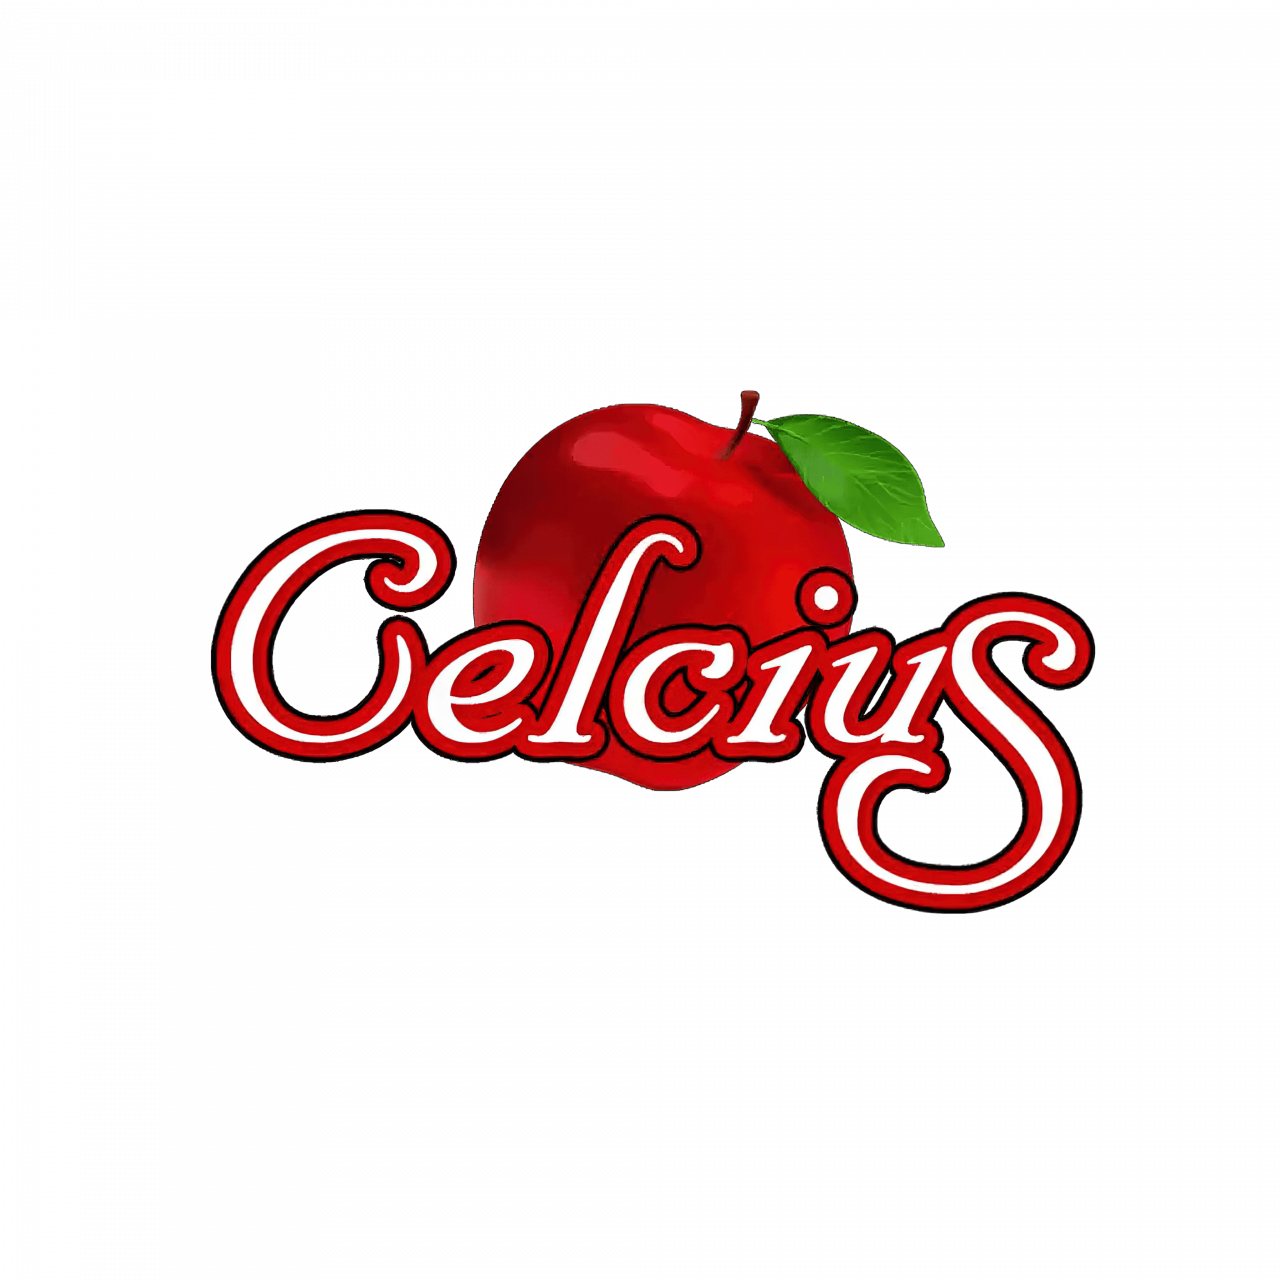 Celcius – Apple – Logo